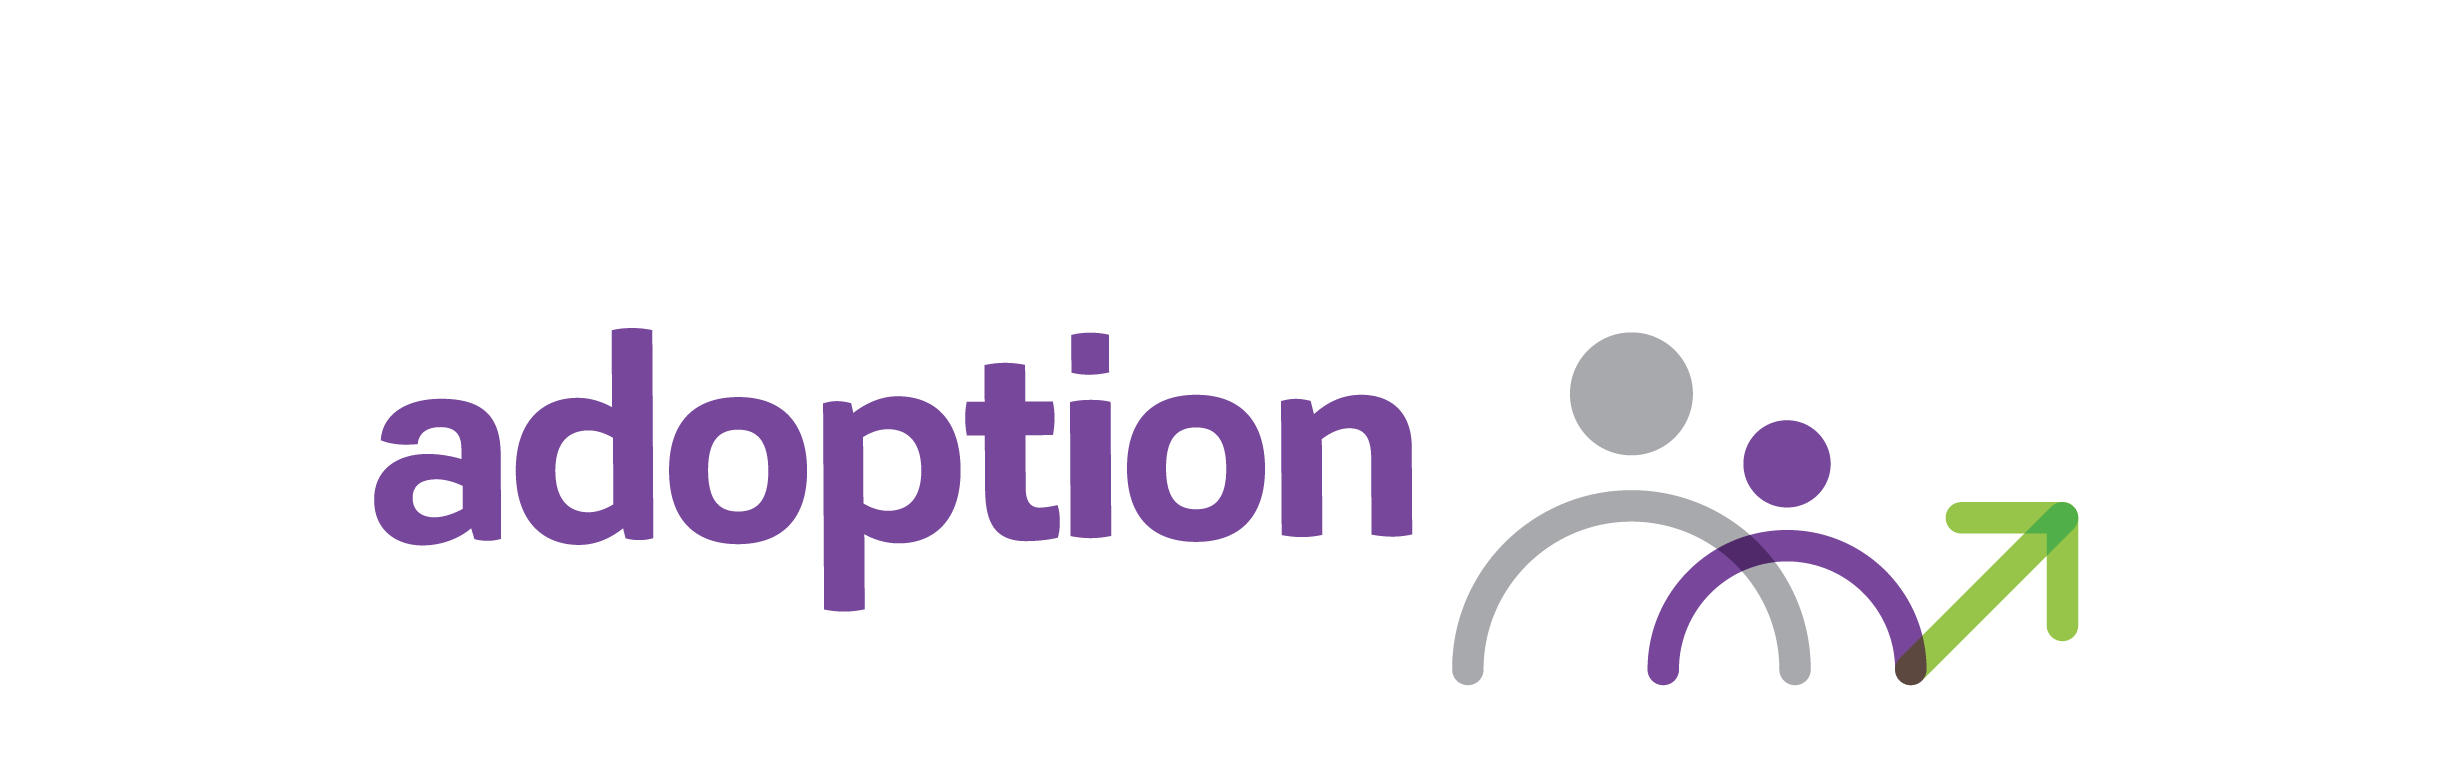 Adoption Routes Logo